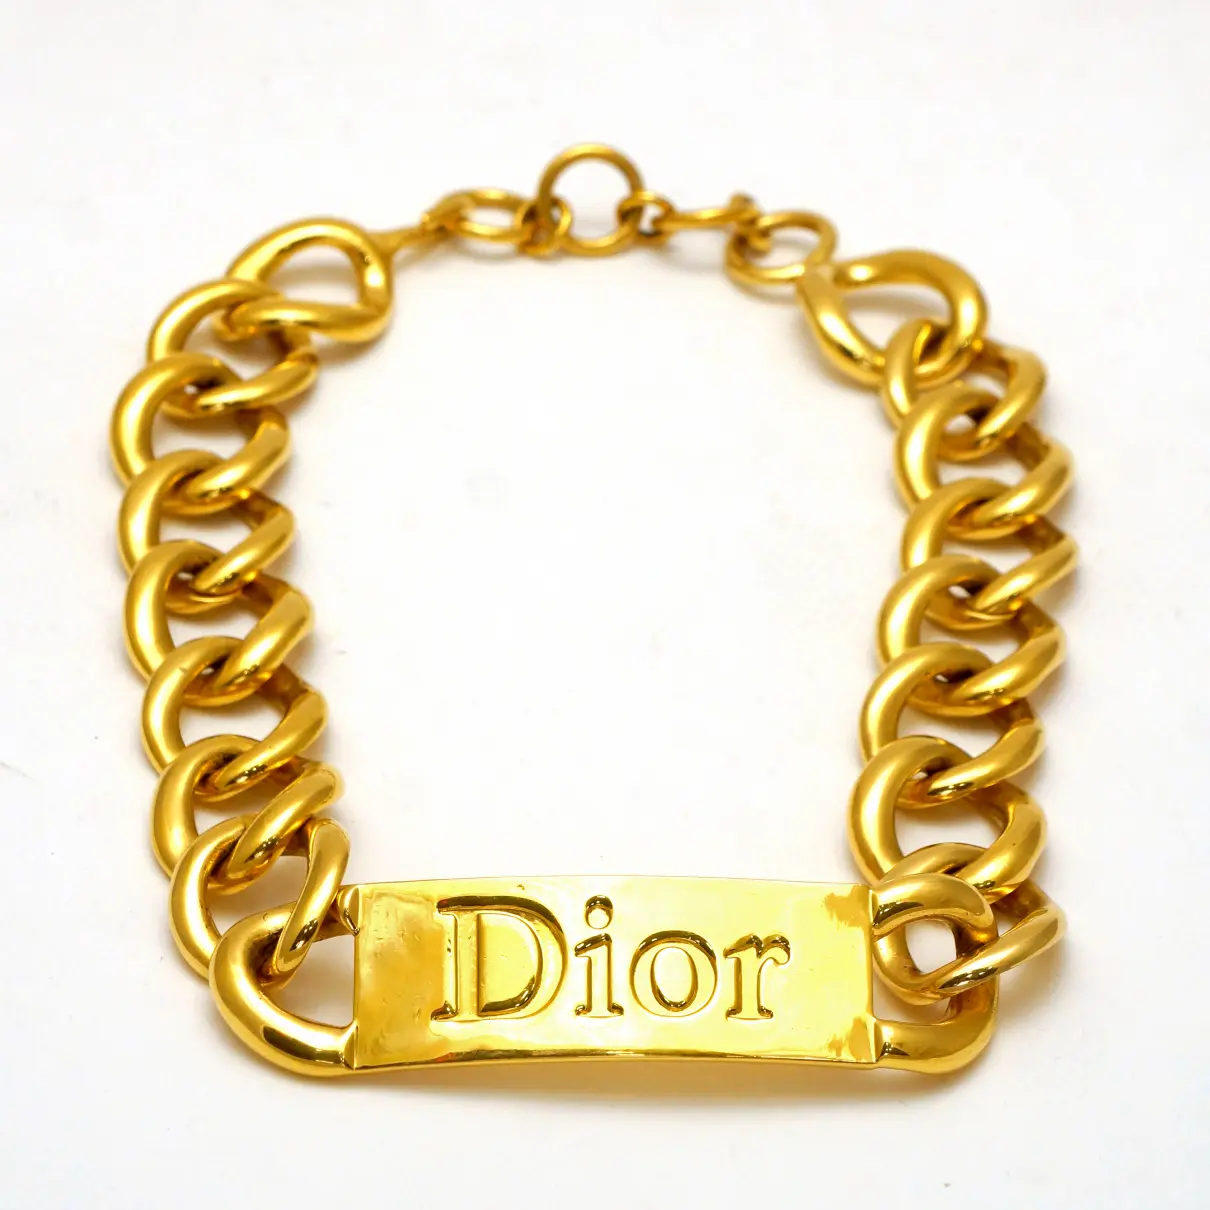 Buy Dior Jewellery set online